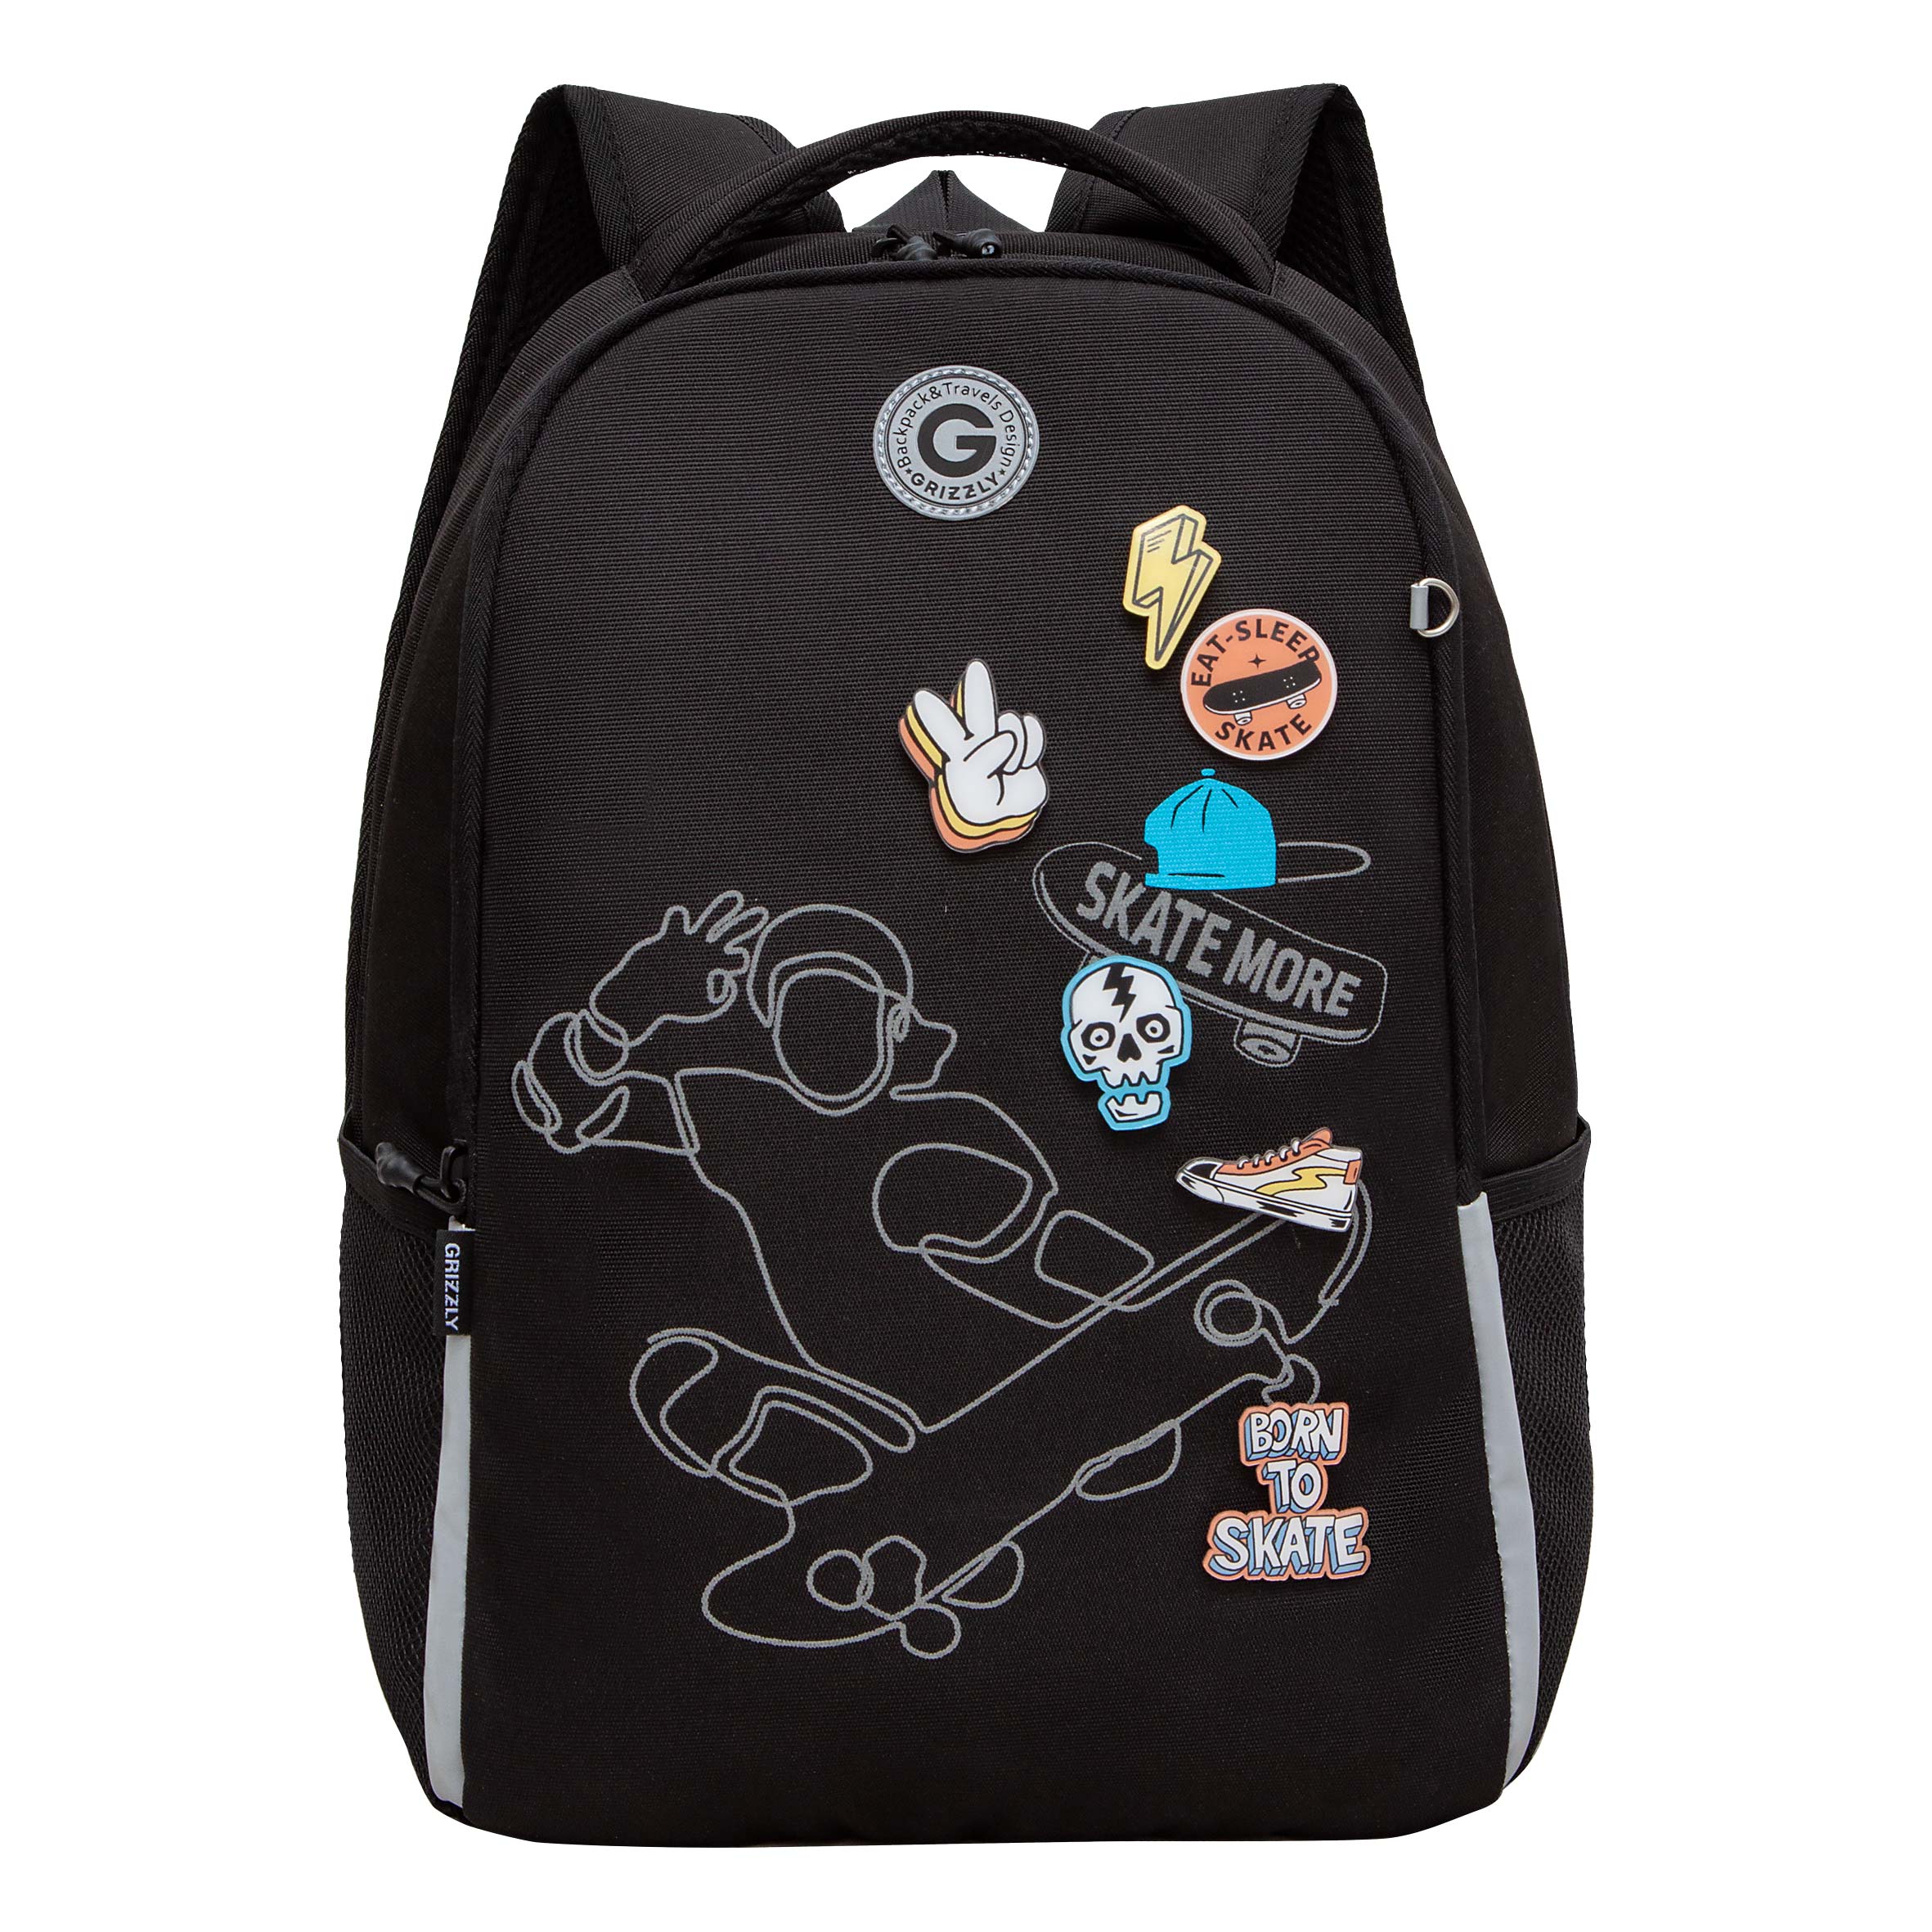 Рюкзак школьный Grizzly Легкий, жесткая спинка, 2 отделения, черный рюкзак школьный grizzly с карманом для ноутбука 13 2 отделения для девочки rg 466 2 2